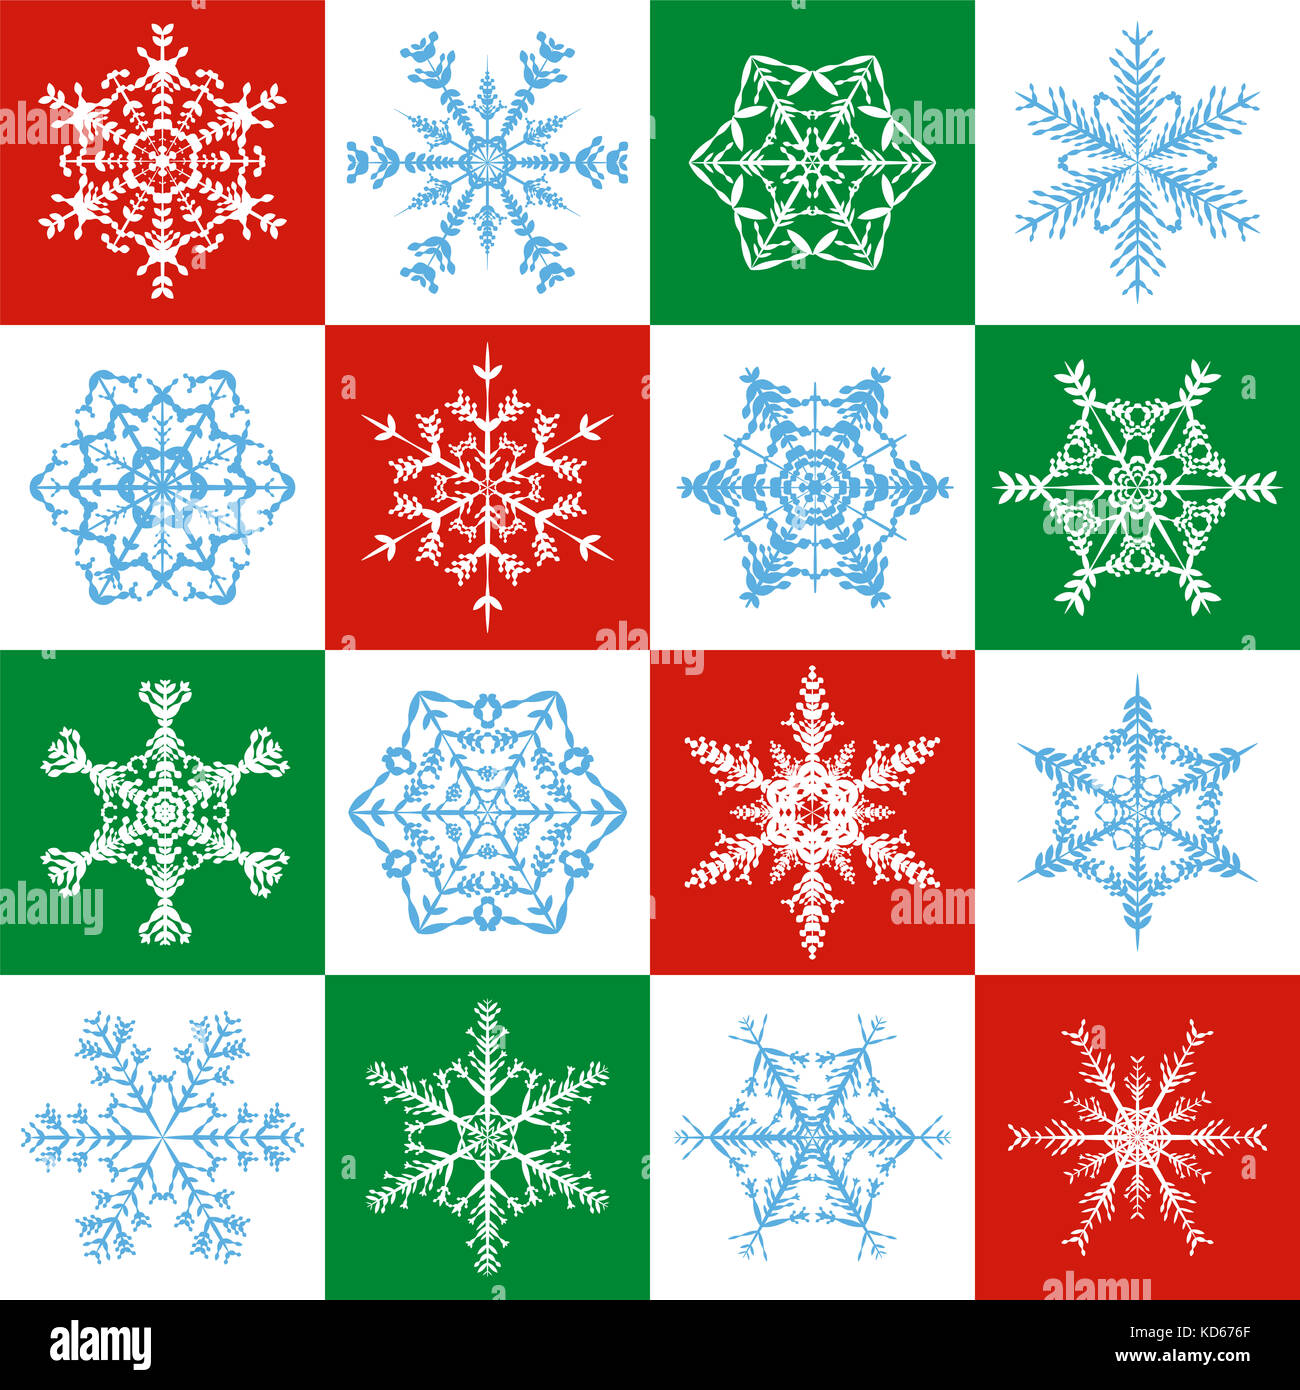 Patrón de copos de nieve - delicado rojo, verde, blanco de fondo de navidad con 16 diseños diferentes - perfecta extensibles tamaño cuadrado. Foto de stock